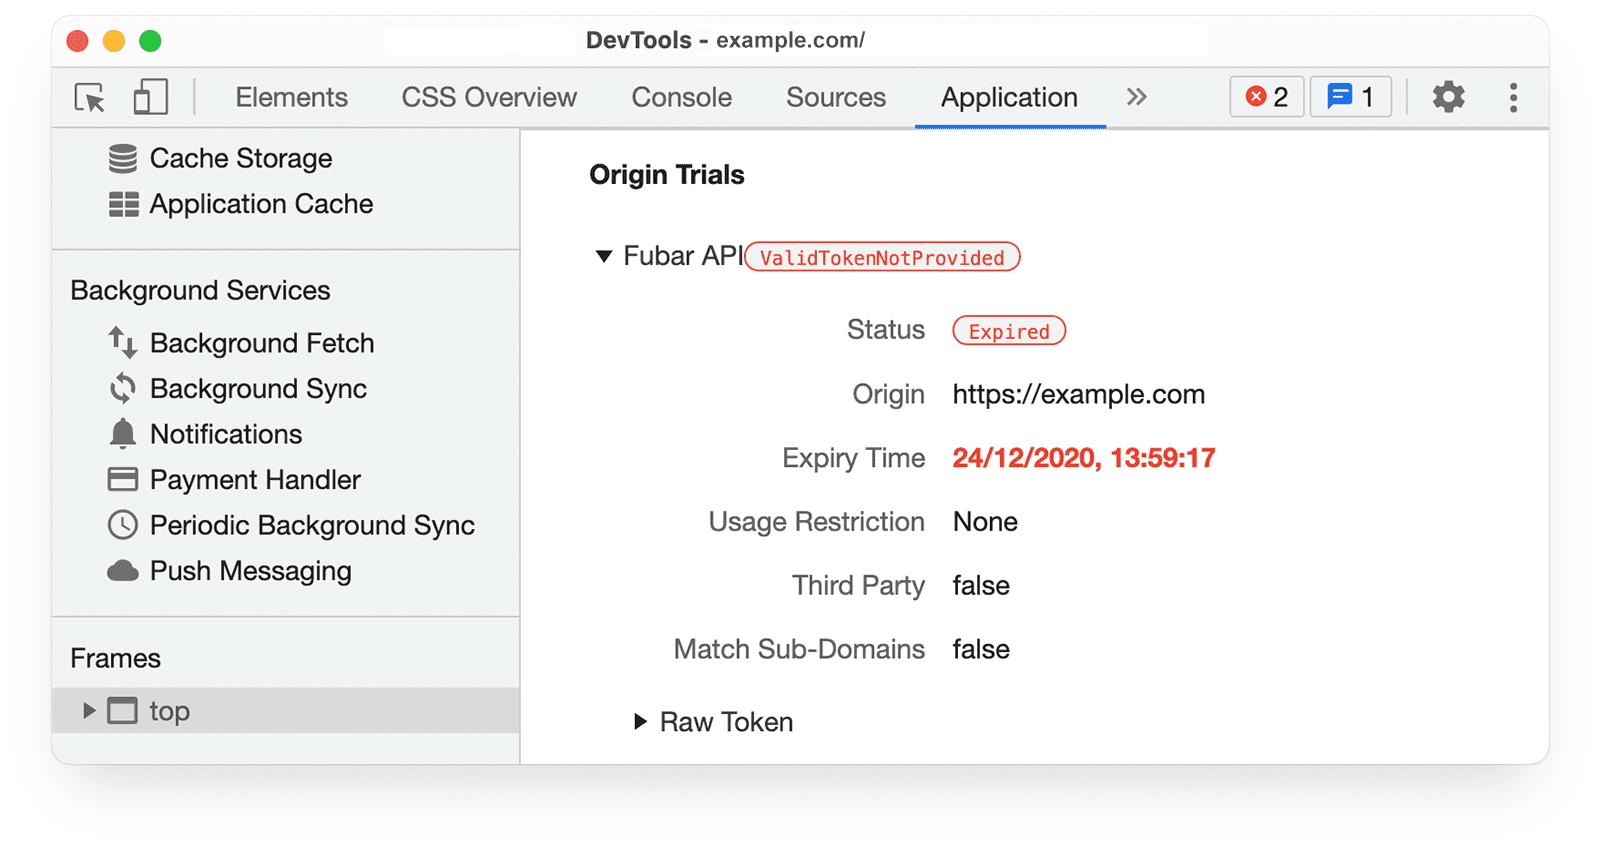 Chrome DevTools 
ऐप्लिकेशन पैनल में, ऑरिजिन ट्रायल की जानकारी में उस टोकन की जानकारी दिख रही है जिसकी समयसीमा खत्म हो चुकी है